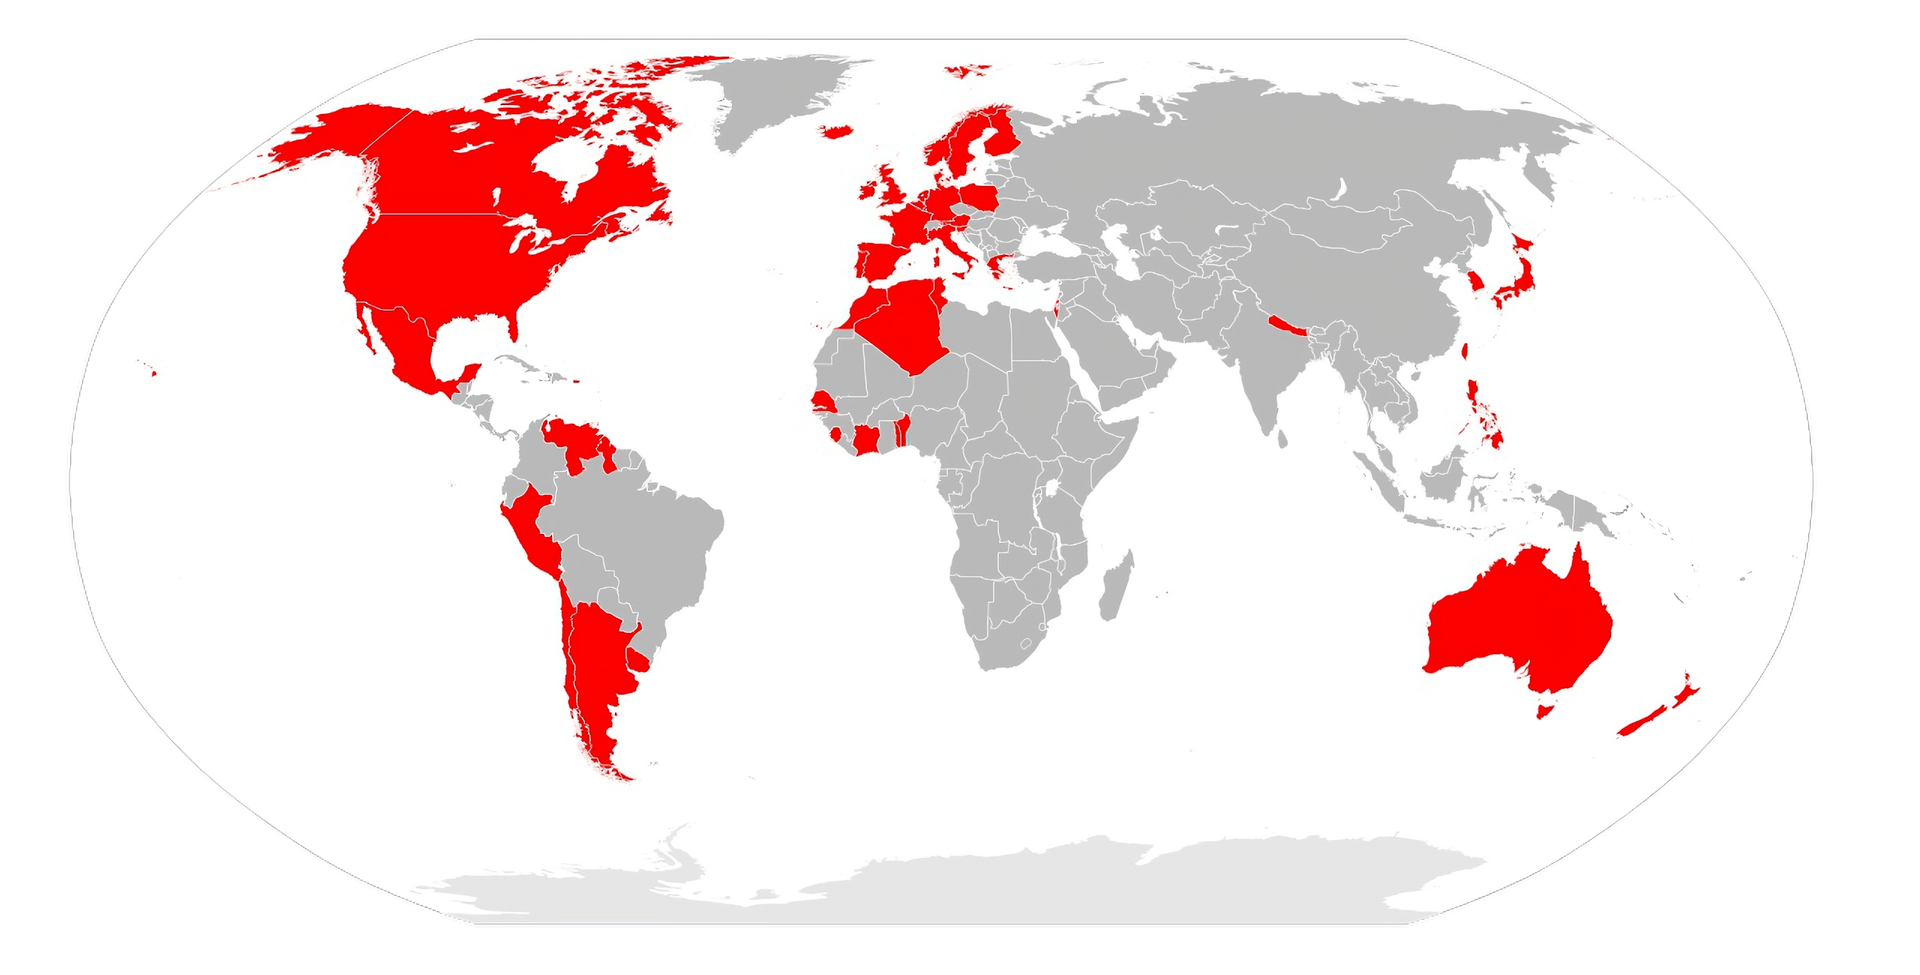 Na ilustracji znajduje się mapa przedstawiająca sekcje krajowe organizacji Amnesty International na całym świecie. Oznaczono je kolorem czerwonym - są to kraje i obszary: Kanada, USA, Meksyk, Wenezuela, Peru, Argentyna, Islandia, Norwegia, Szwecja, Finlandia, Wielka Brytania, Irlandia, Portugalia, Hiszpania, Francja, Włochy, Austria, Belgia, Niemcy, Holandia, Polska, Svalbard, Grecja, Izrael, Nepal, Tajwan, Japonia, Korea Południowa, Australia, Tasmania, Nowa Zelandia, Algeria, Maroko, Senegal, Sierra Leone, Wybrzeże Kości Słoniowej, Tunezja, Togo, Benin.